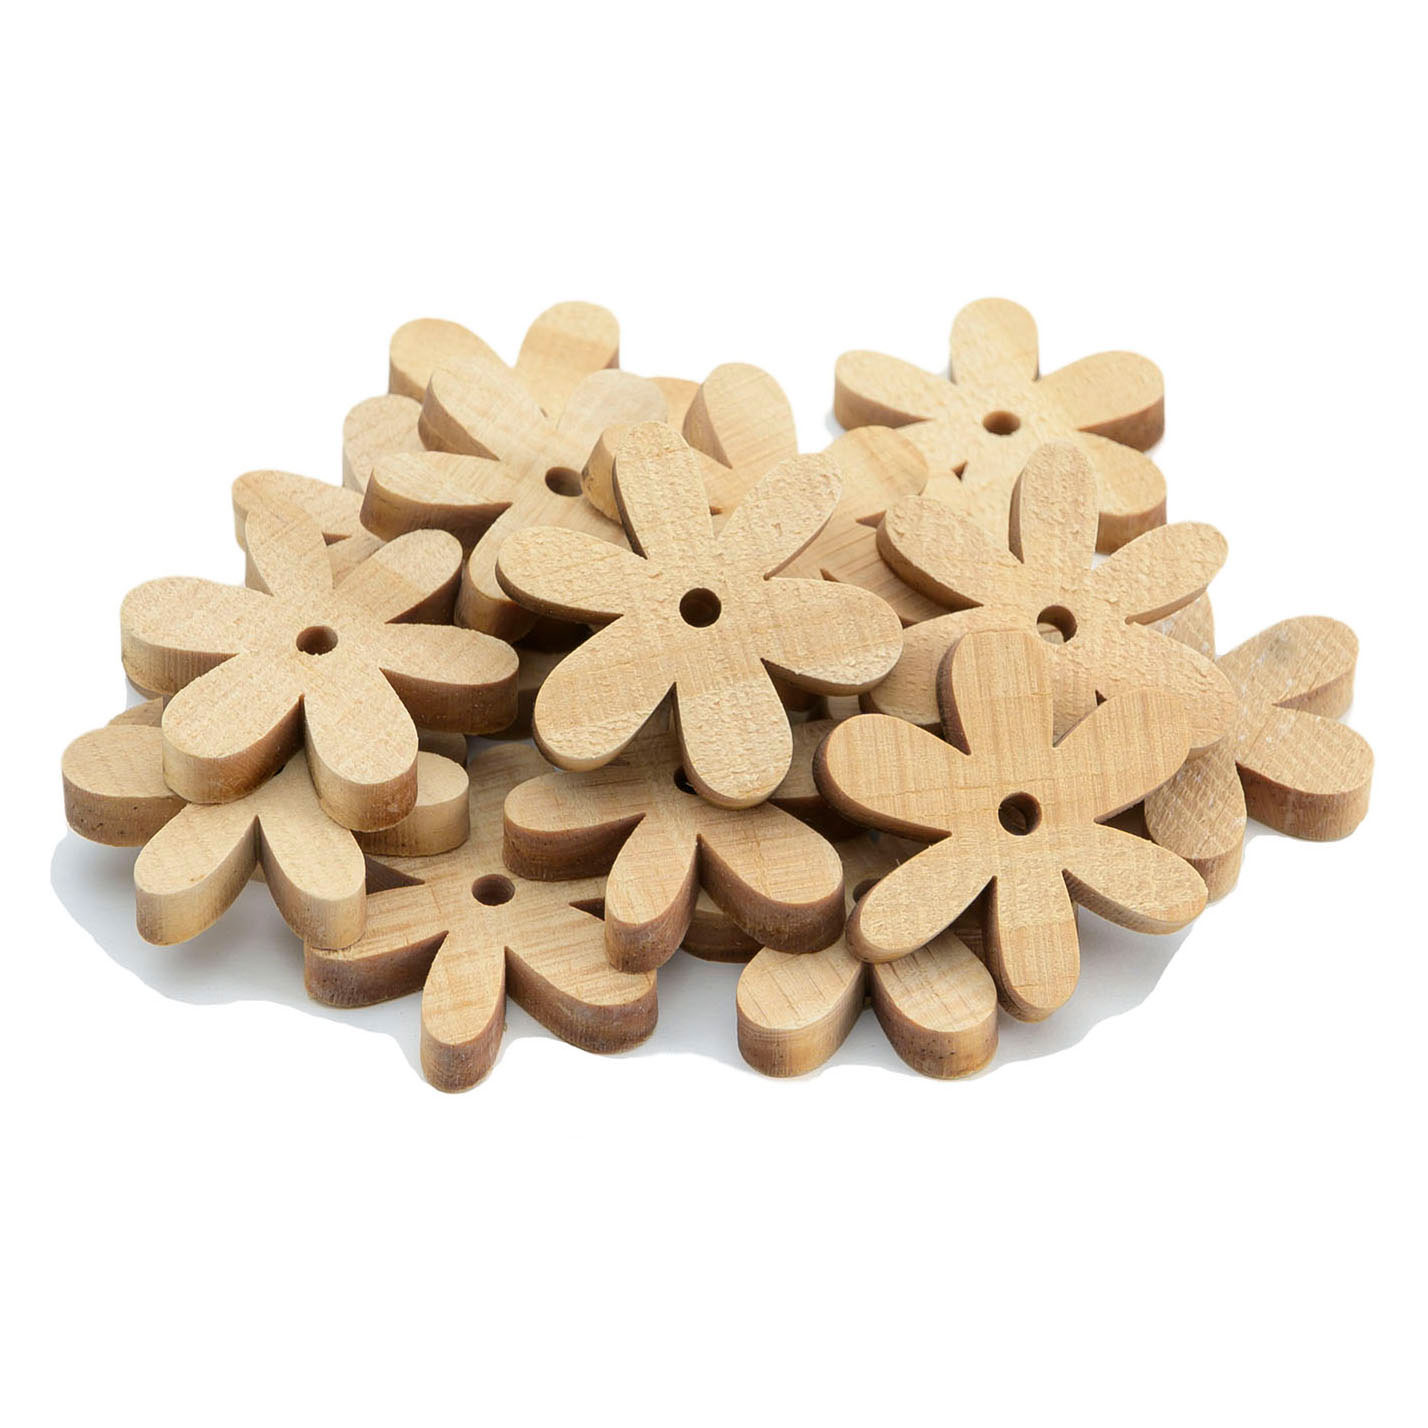 Colorations - Petites marguerites en bois, 20pcs.